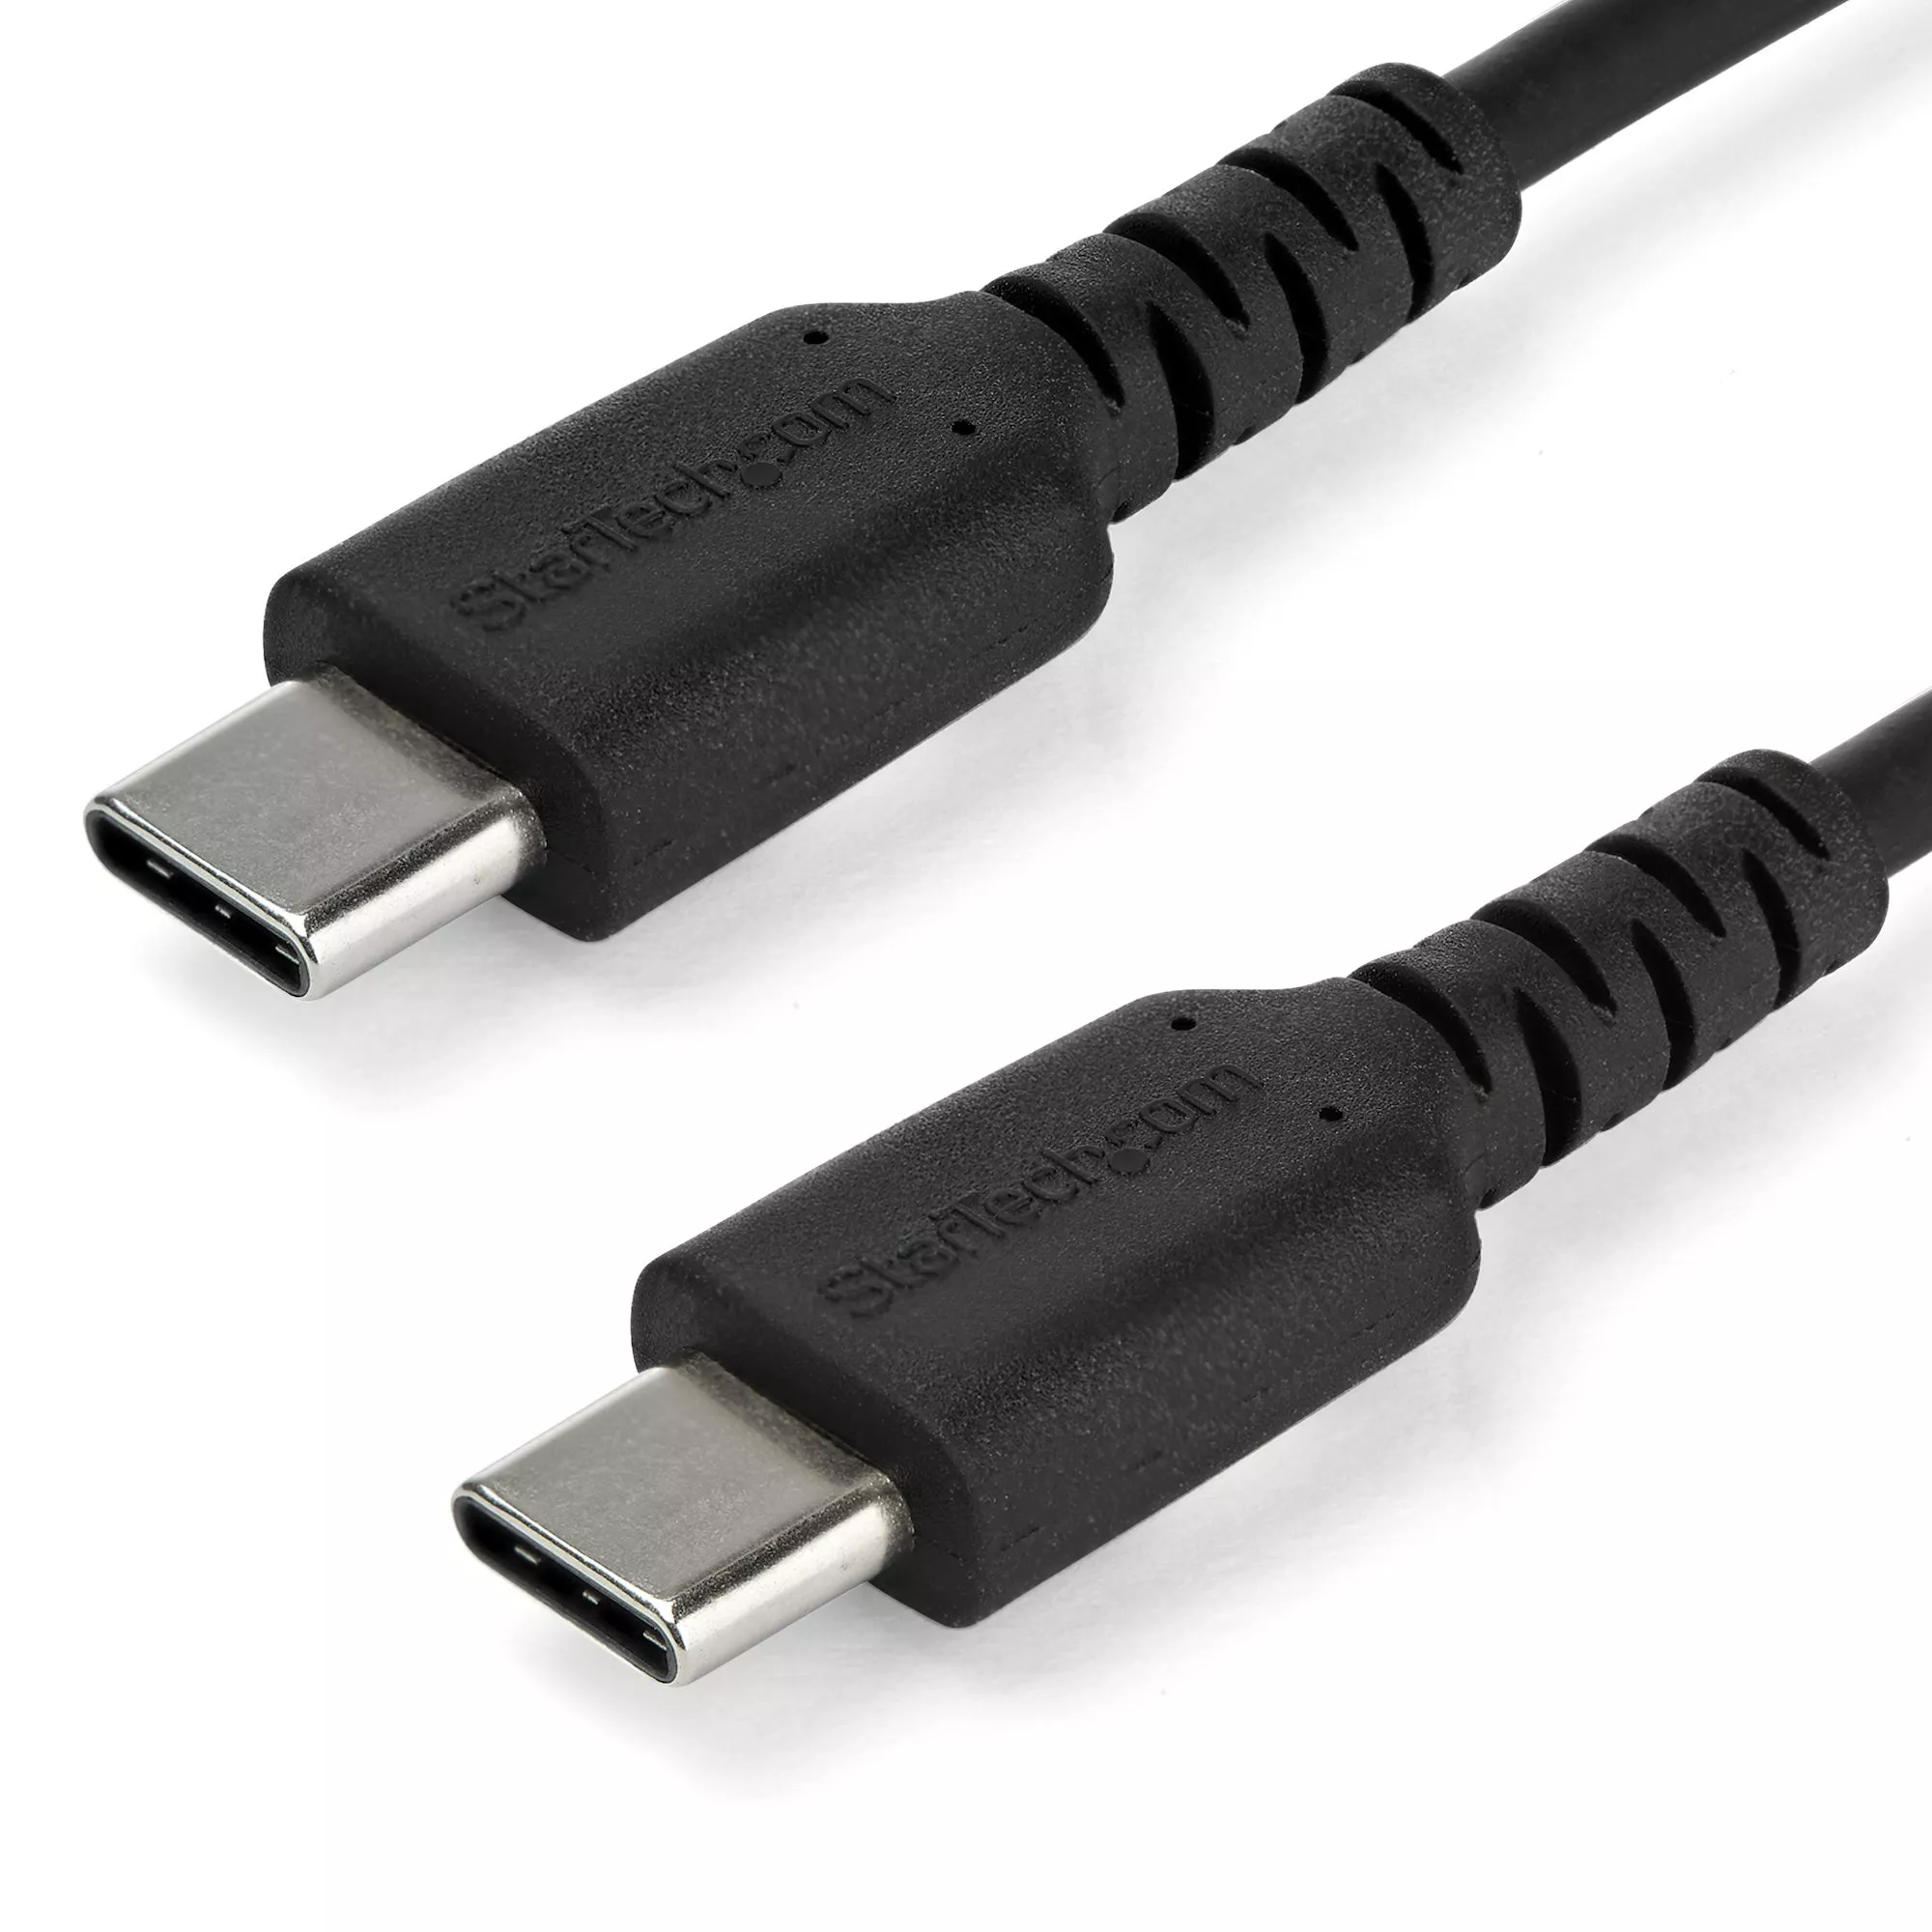 Achat StarTech.com Câble USB-C vers USB-C de 2 m - Noir au meilleur prix